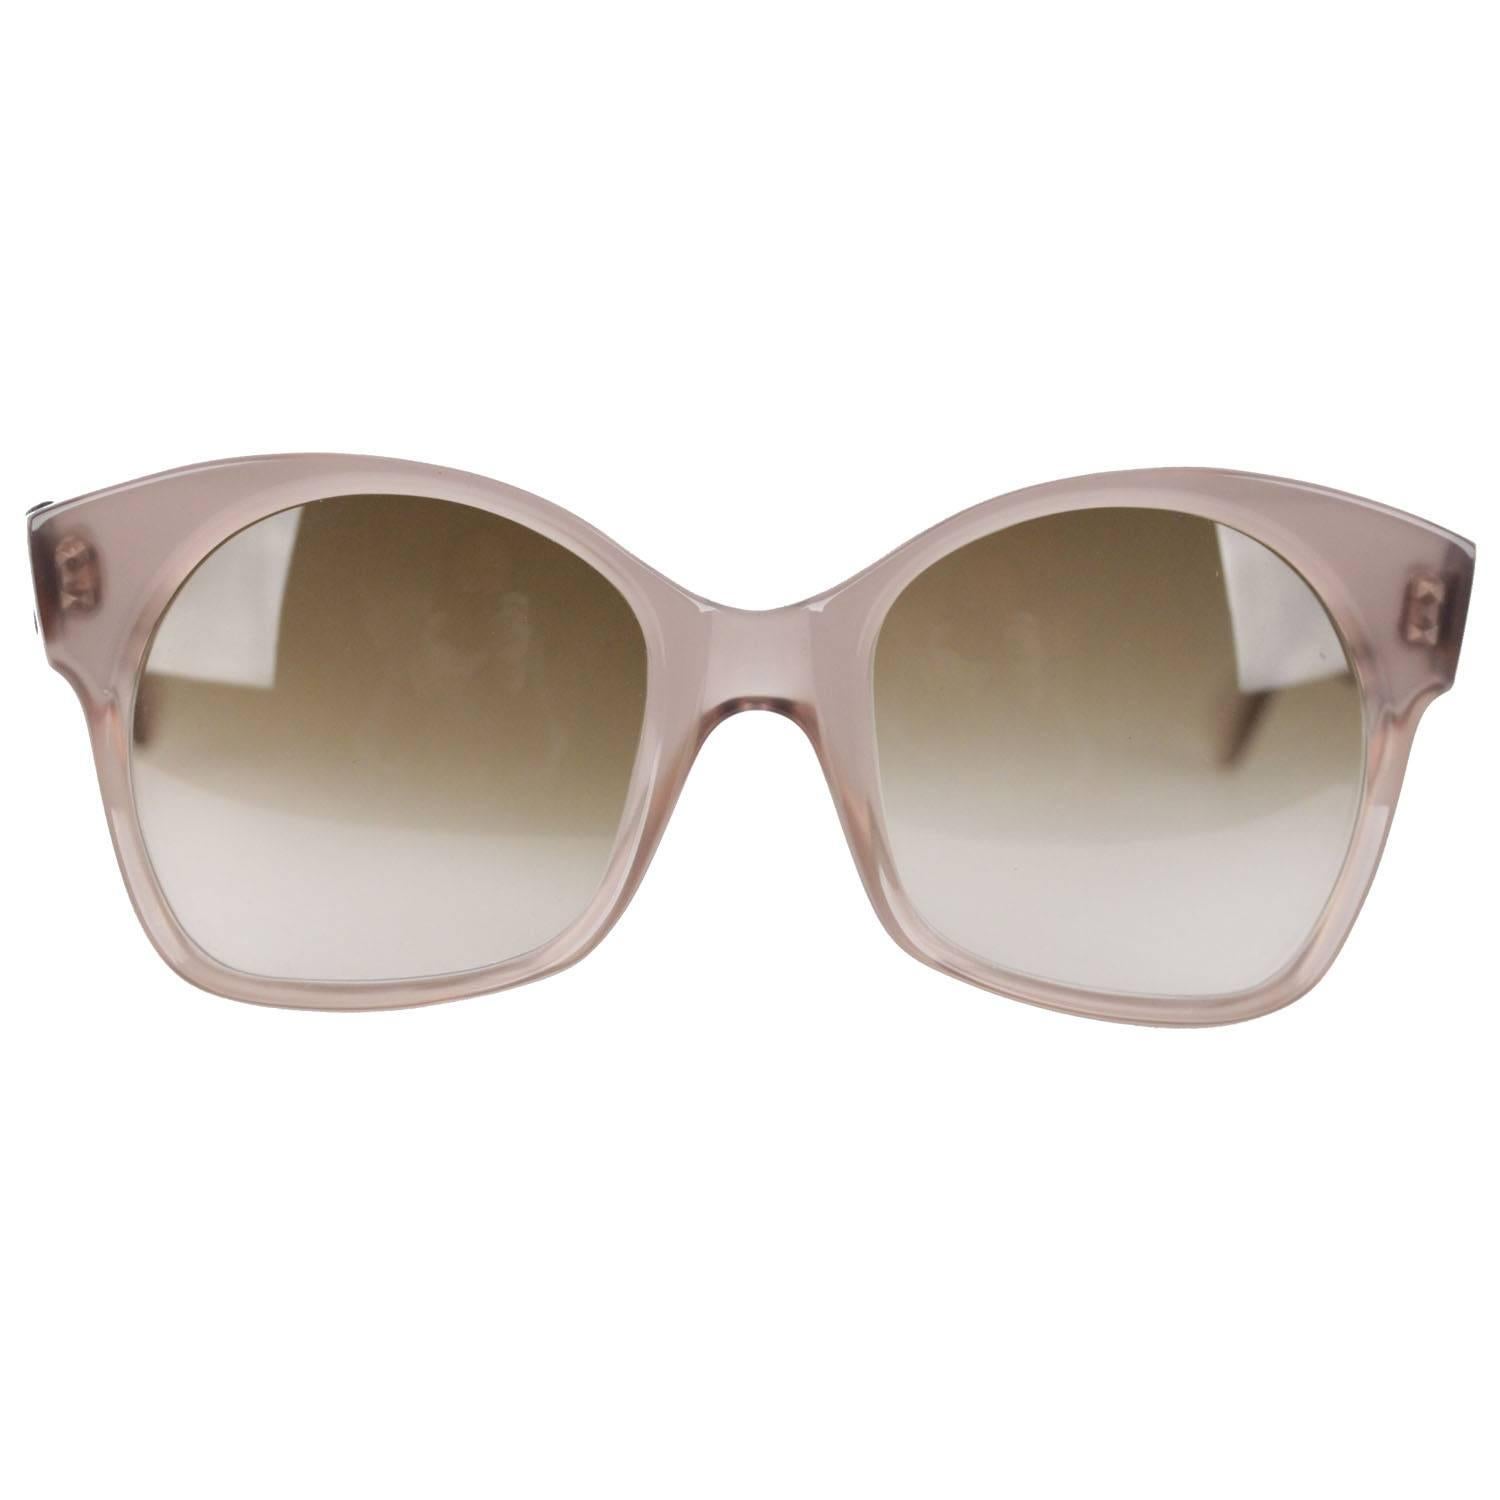 YVES SAINT LAURENT Vintage MINT RARE Large Gray Sunglasses AGRIAS 52/22